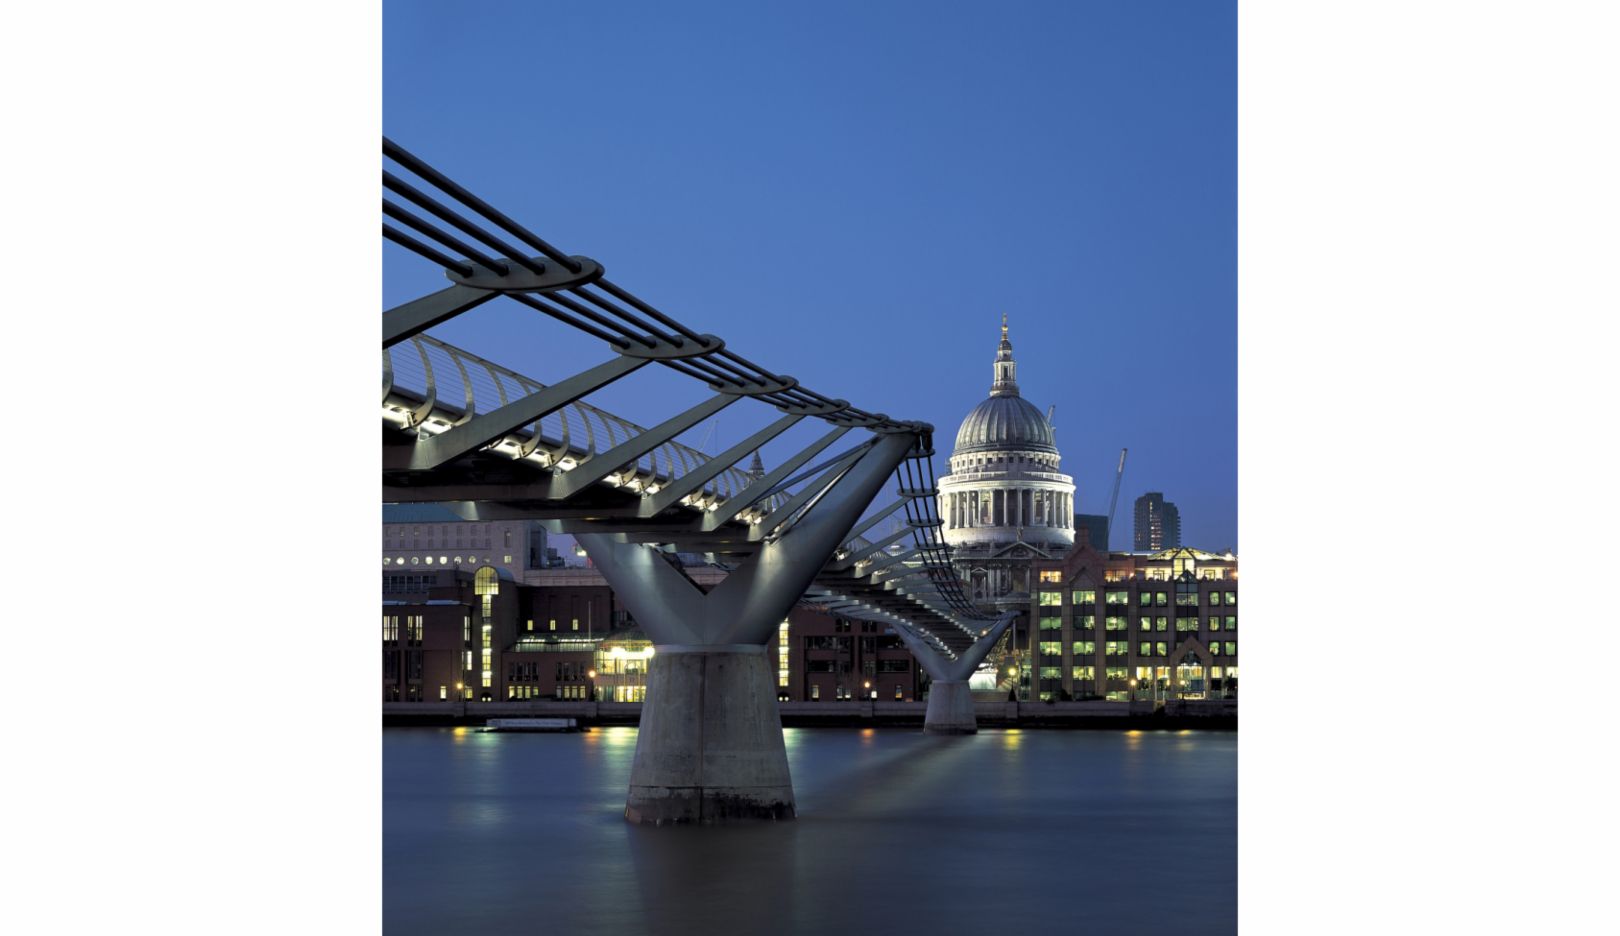 Ebenfalls in London wurde Lord Norman Fosters Entwurf einer Fußgängerbrücke umgesetzt. Die berühmte Millenium-Bridge führt über die Themse. Im Juni 2000 eröffnet, wurde die Brücke allein am ersten Wochenende von rund 100.000 Menschen überquert. Foto: Nigel Young / Foster + Partners